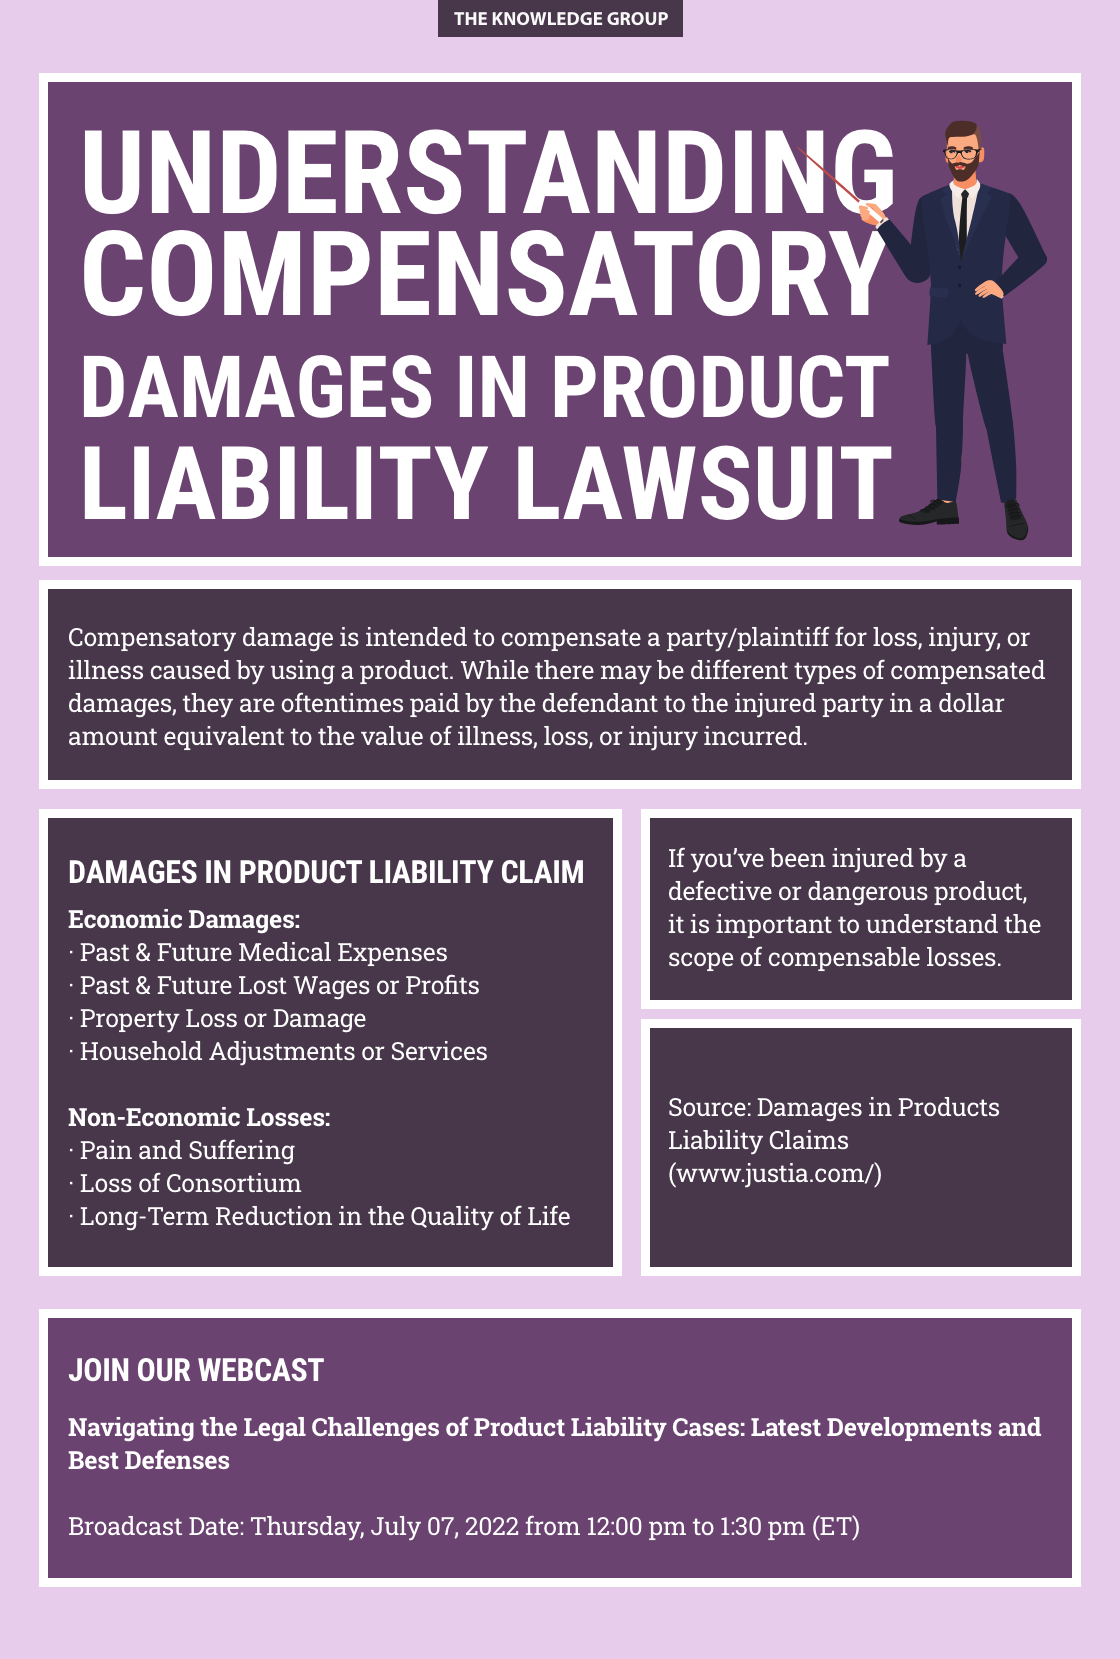 product liability,compensatory damages,webcast